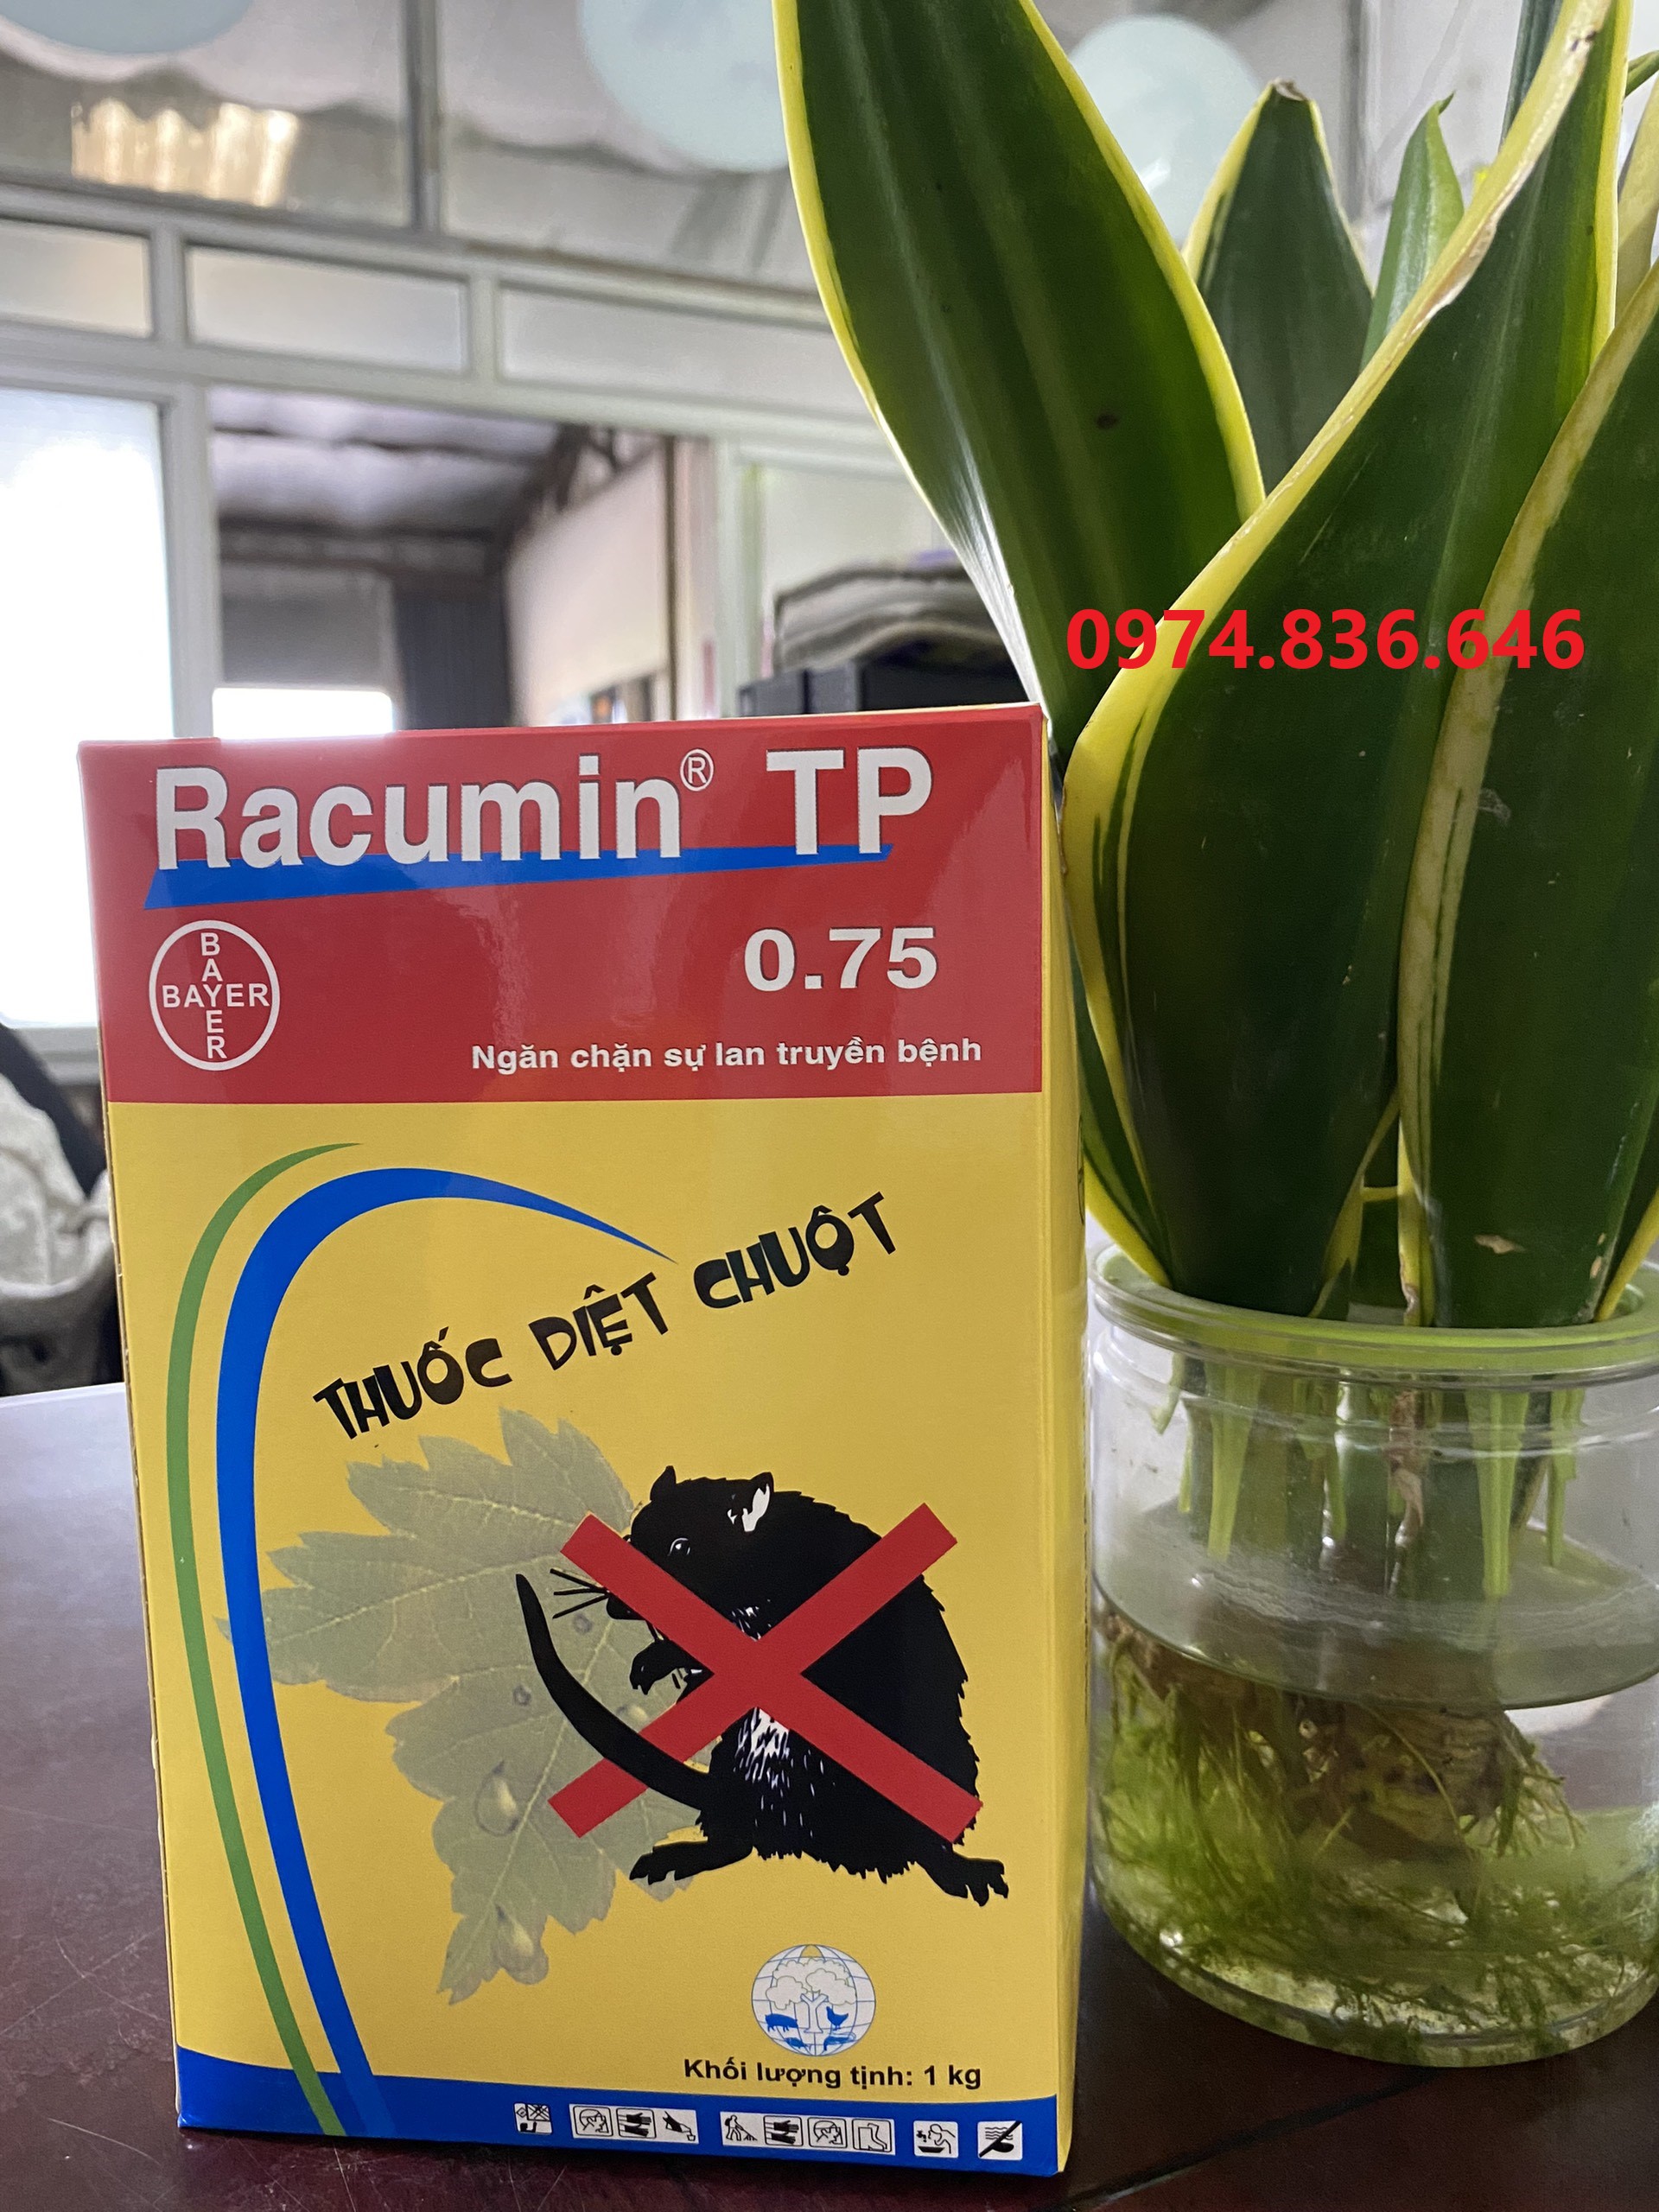 Siêu diệt chuột thông minh Racumin 0.75 TP 1kg